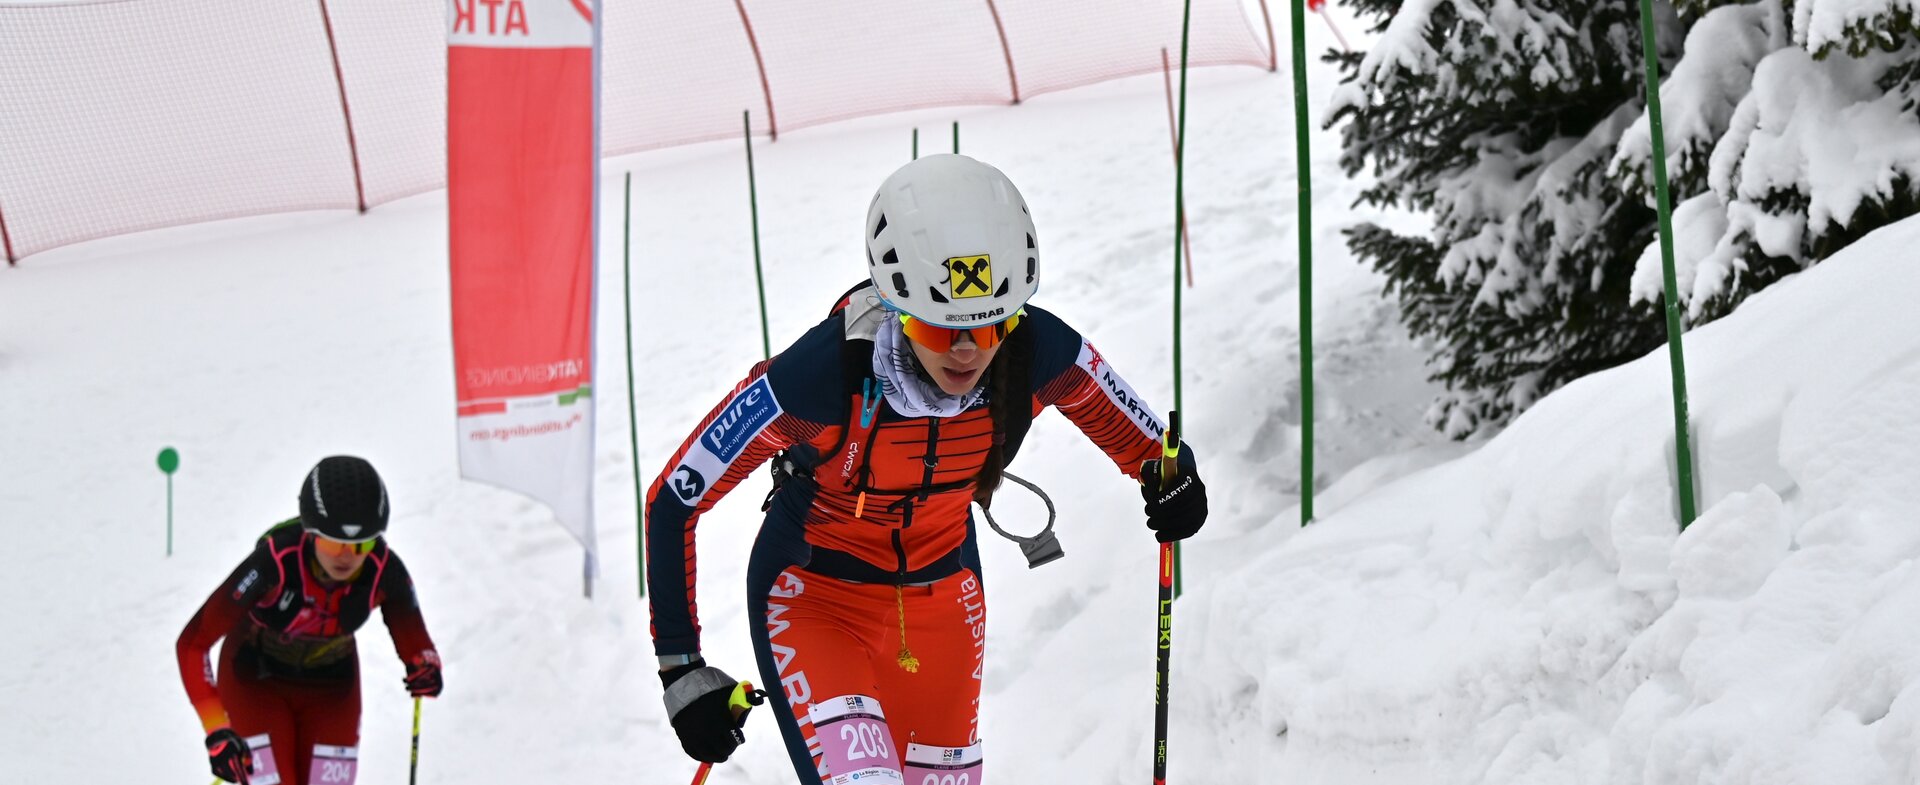 Emma Albrecht lässt die Konkurrenz hinter sich | © Ski Austria / Weigl